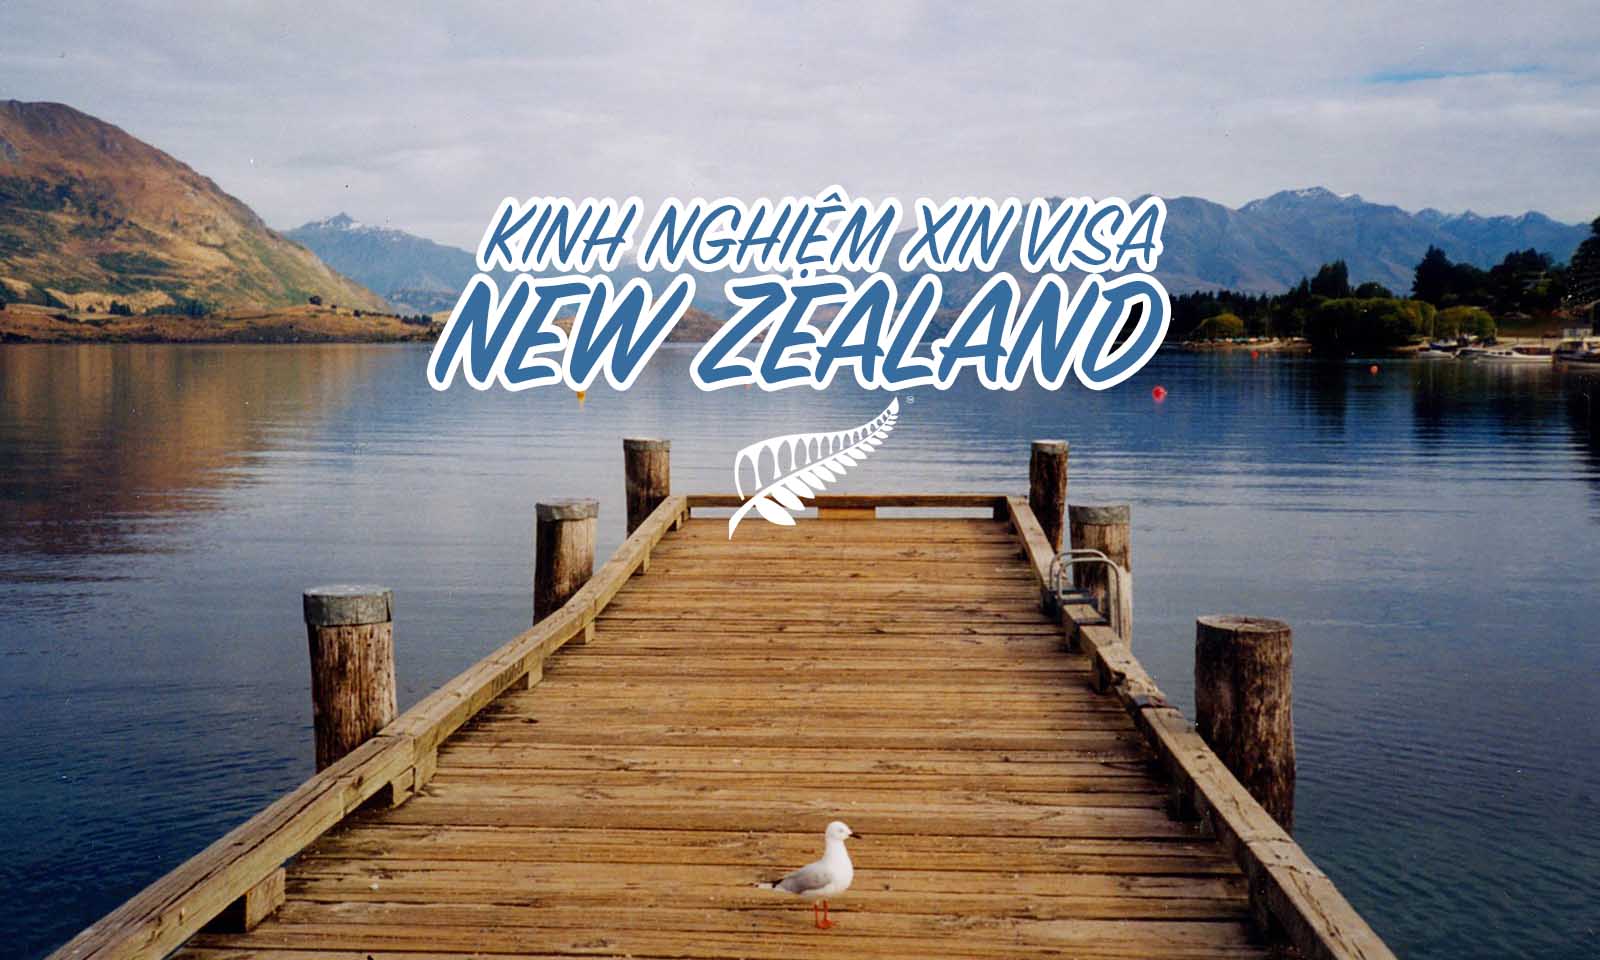 Kinh nghiệm du lịch New Zealand dành riêng cho tín đồ phượt thủ (2019)